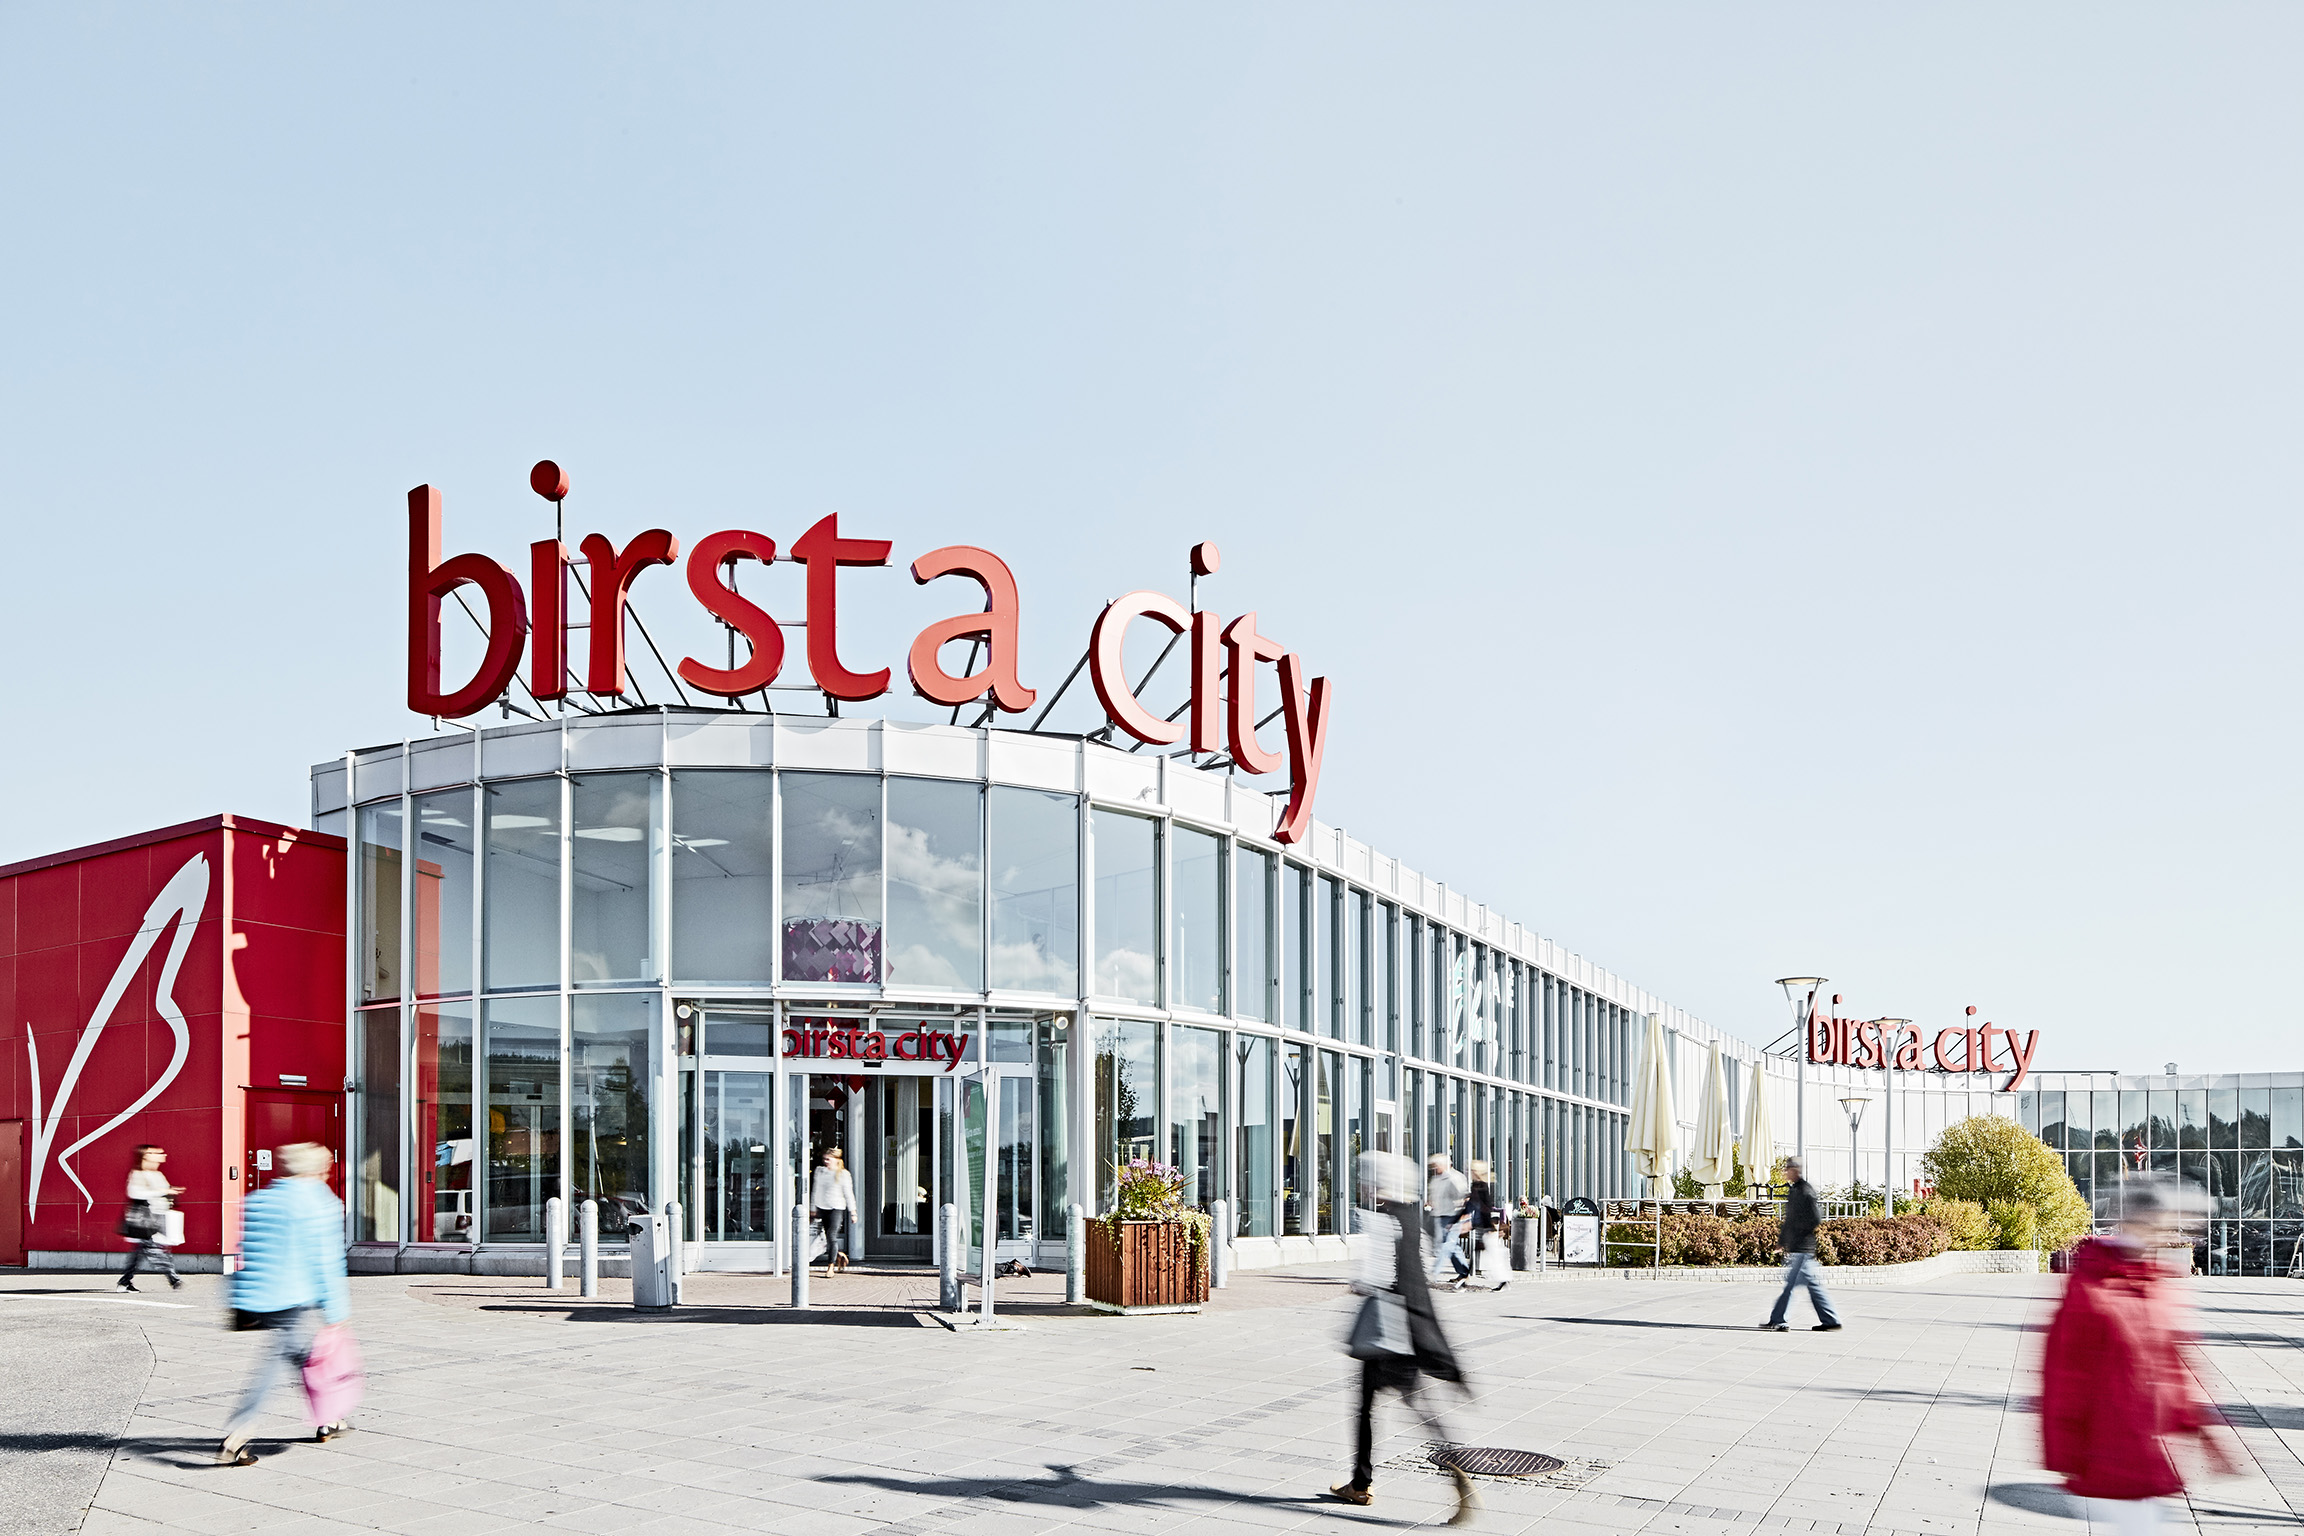 Bild av byggnaden Birsta city med glasfasad. På taket av byggnaden är det stora röda bokstäver som bildar ordet Birsta City. Fotograf: Peter Brinch